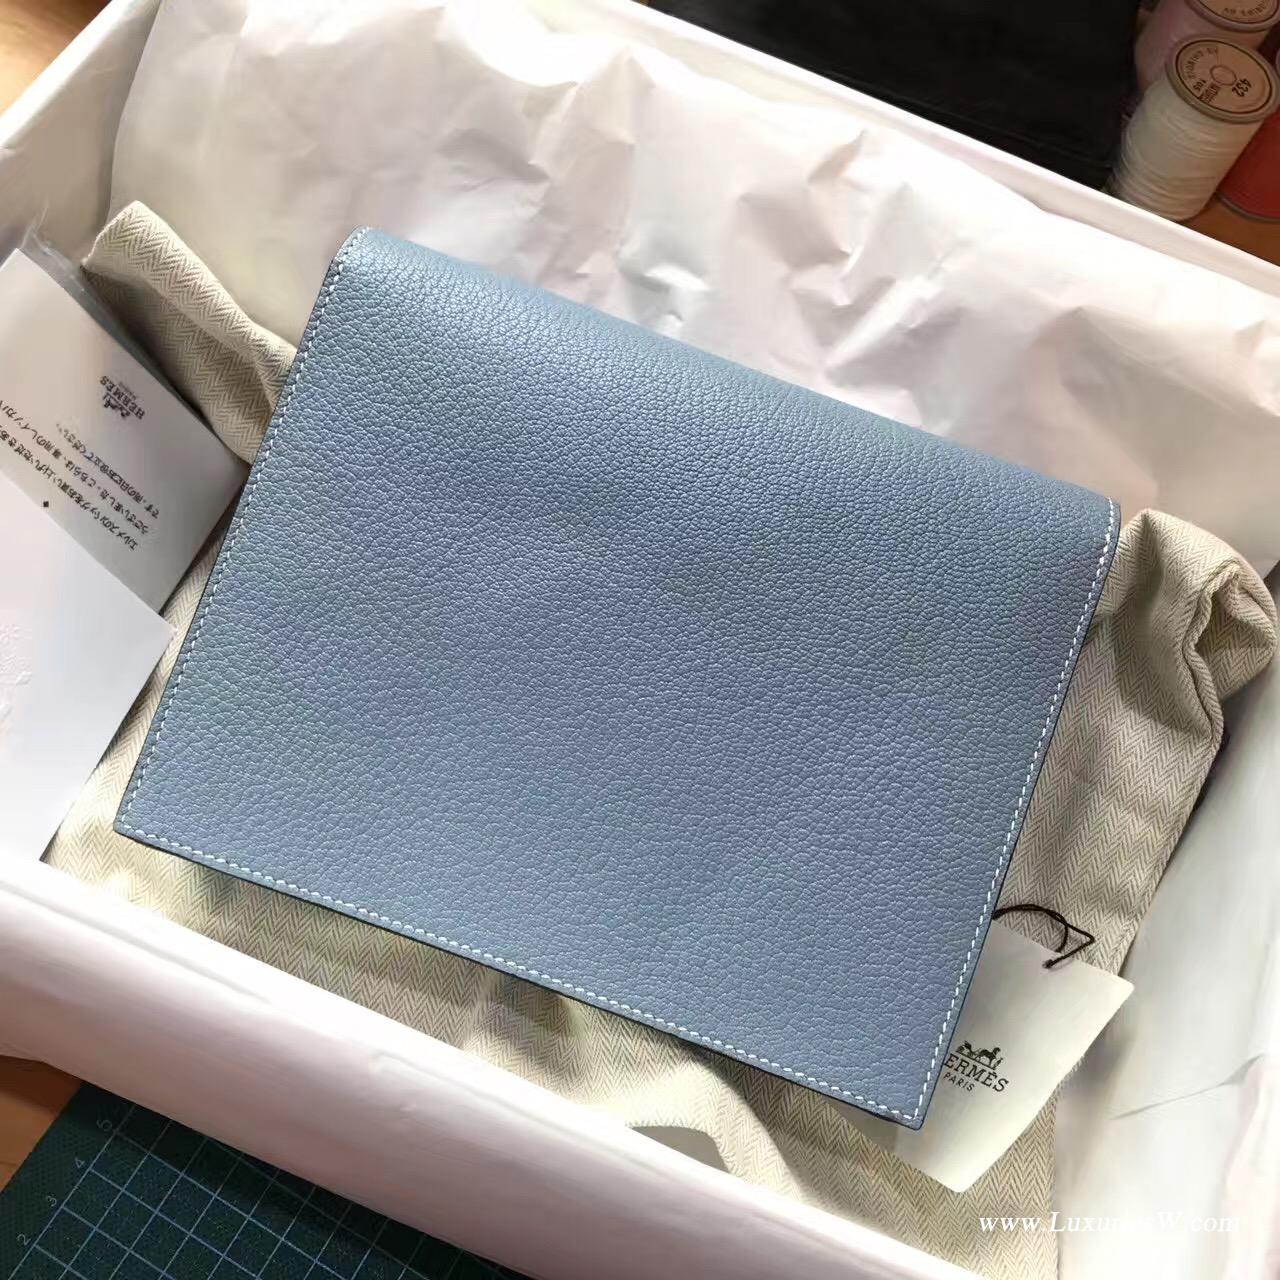 愛馬仕 Herems Verrou Chaine bag 手包最新款手包 J7 Blue Lin亞麻藍算藍色系列